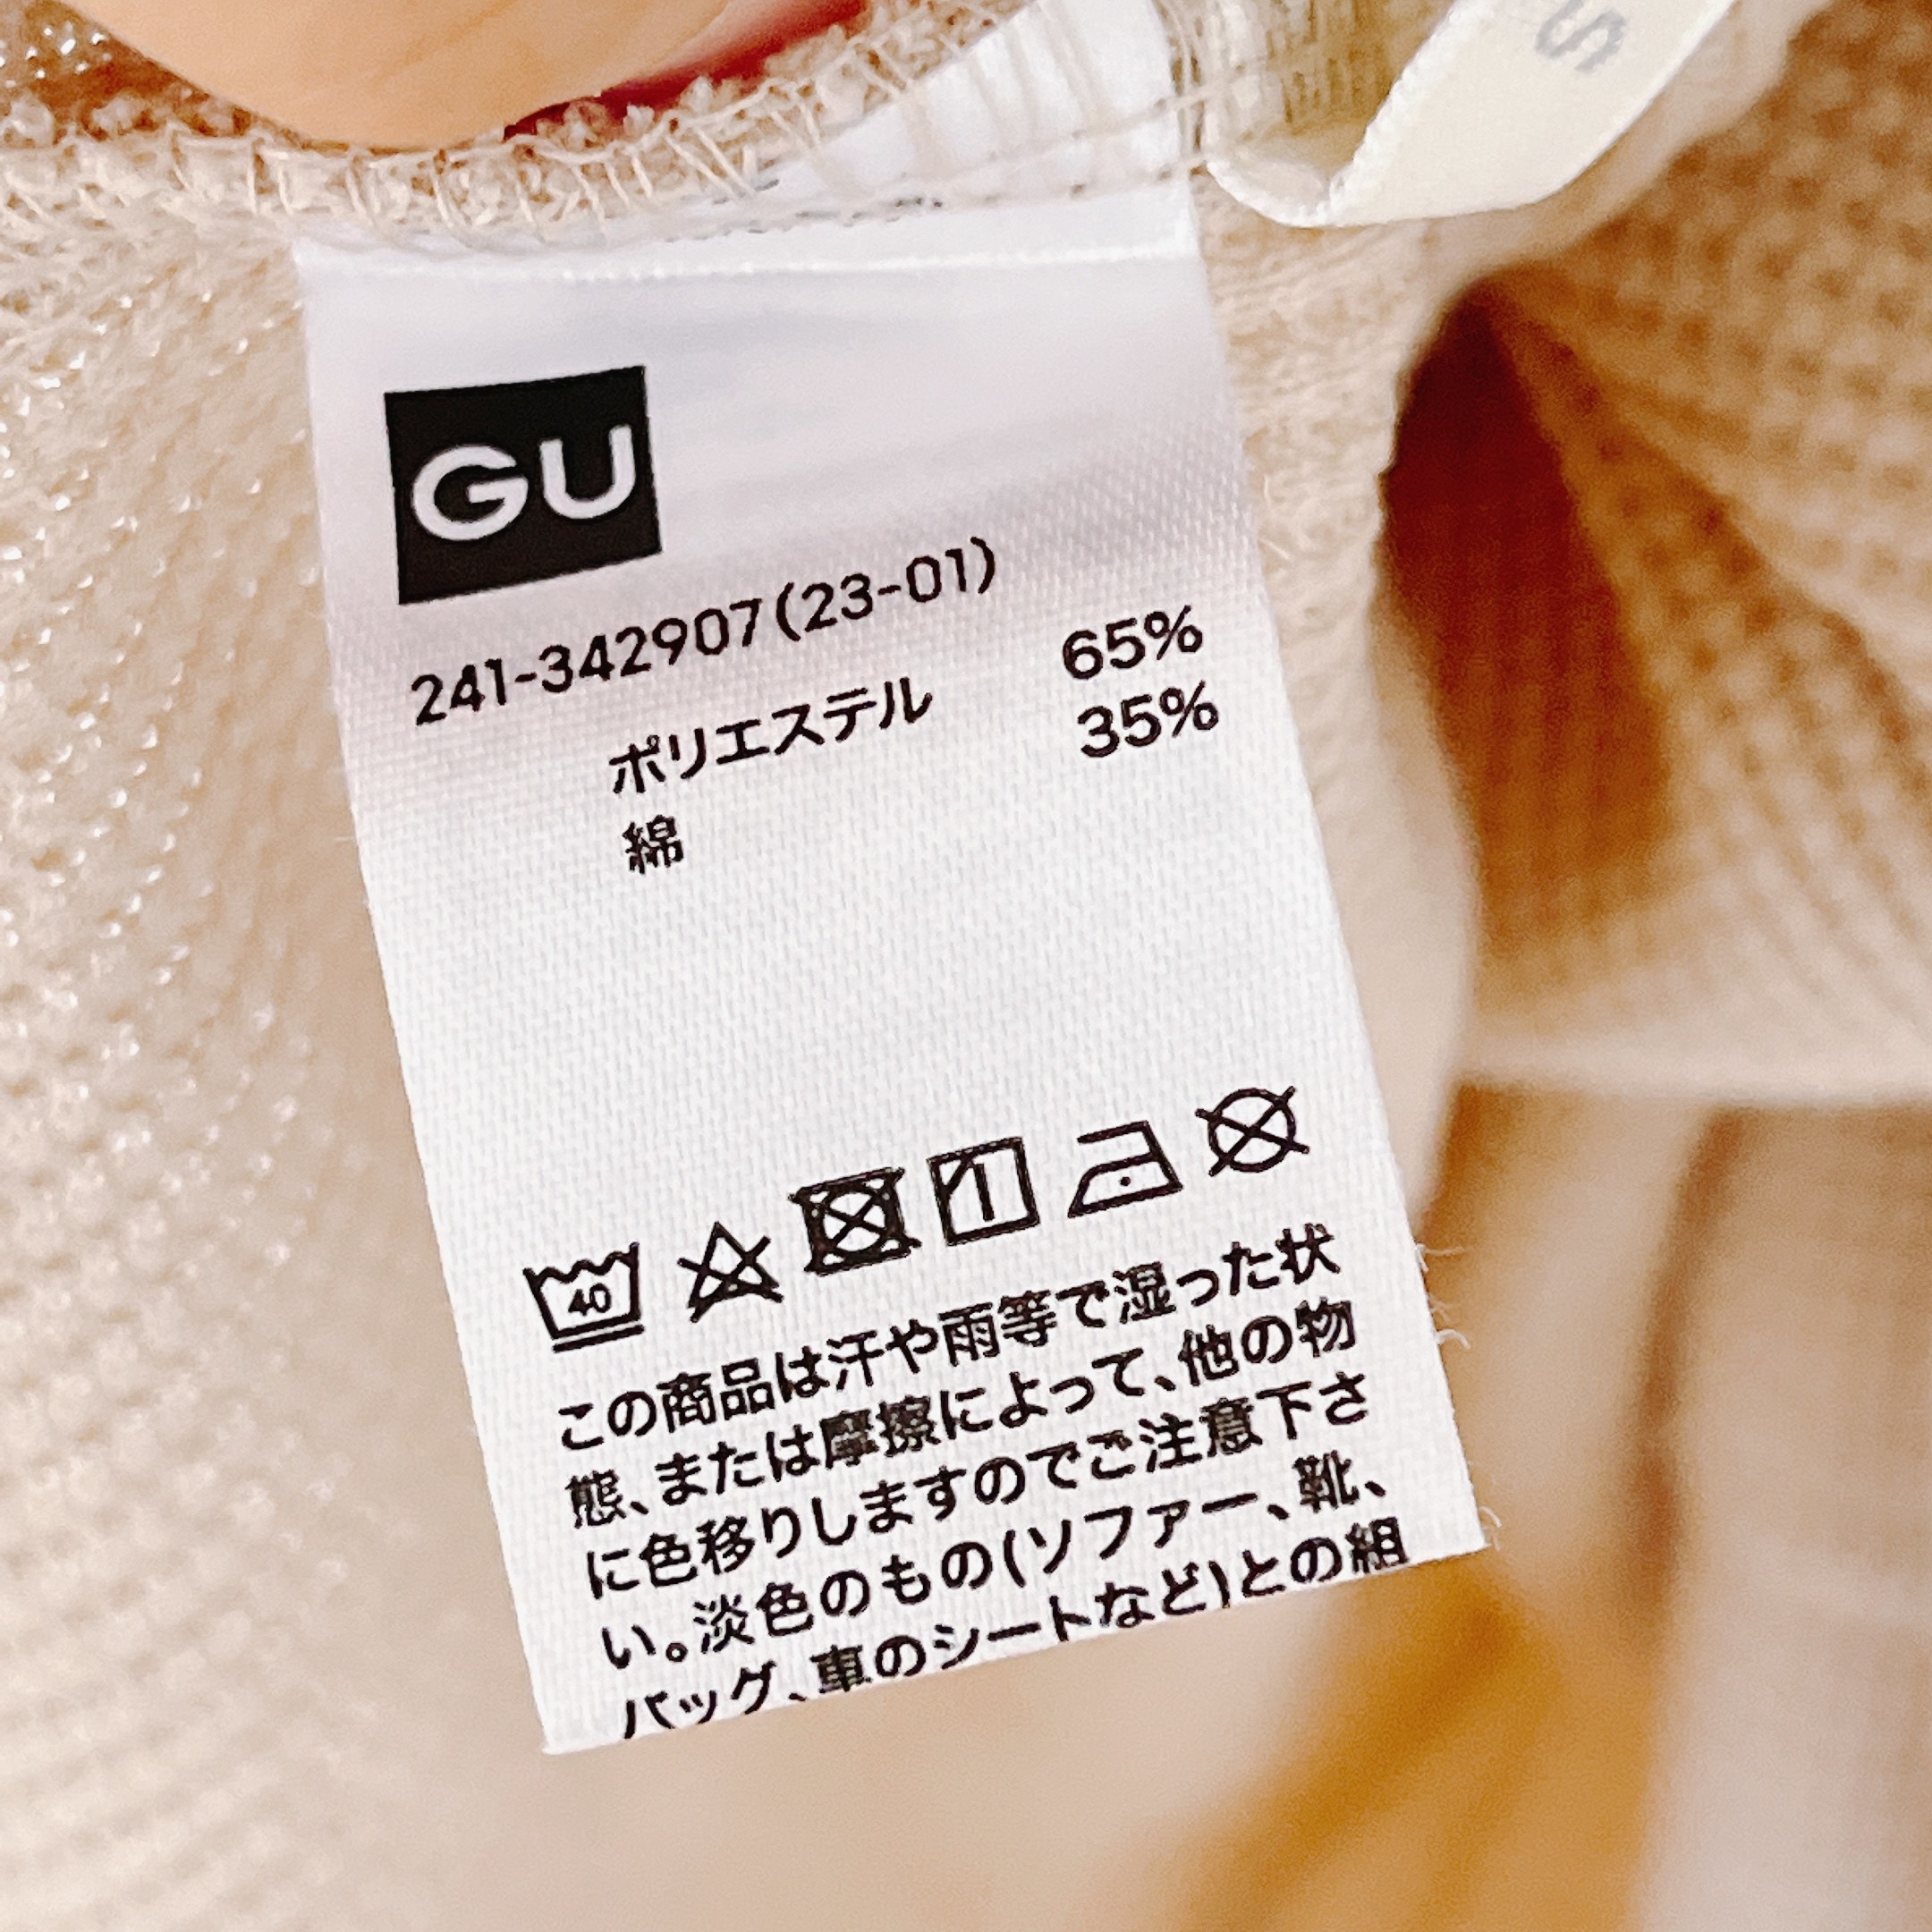 GU（ジーユー）のおすすめのファッションアイテム「ワッフルバックヘンリーネックフレアワンピース(長袖)」